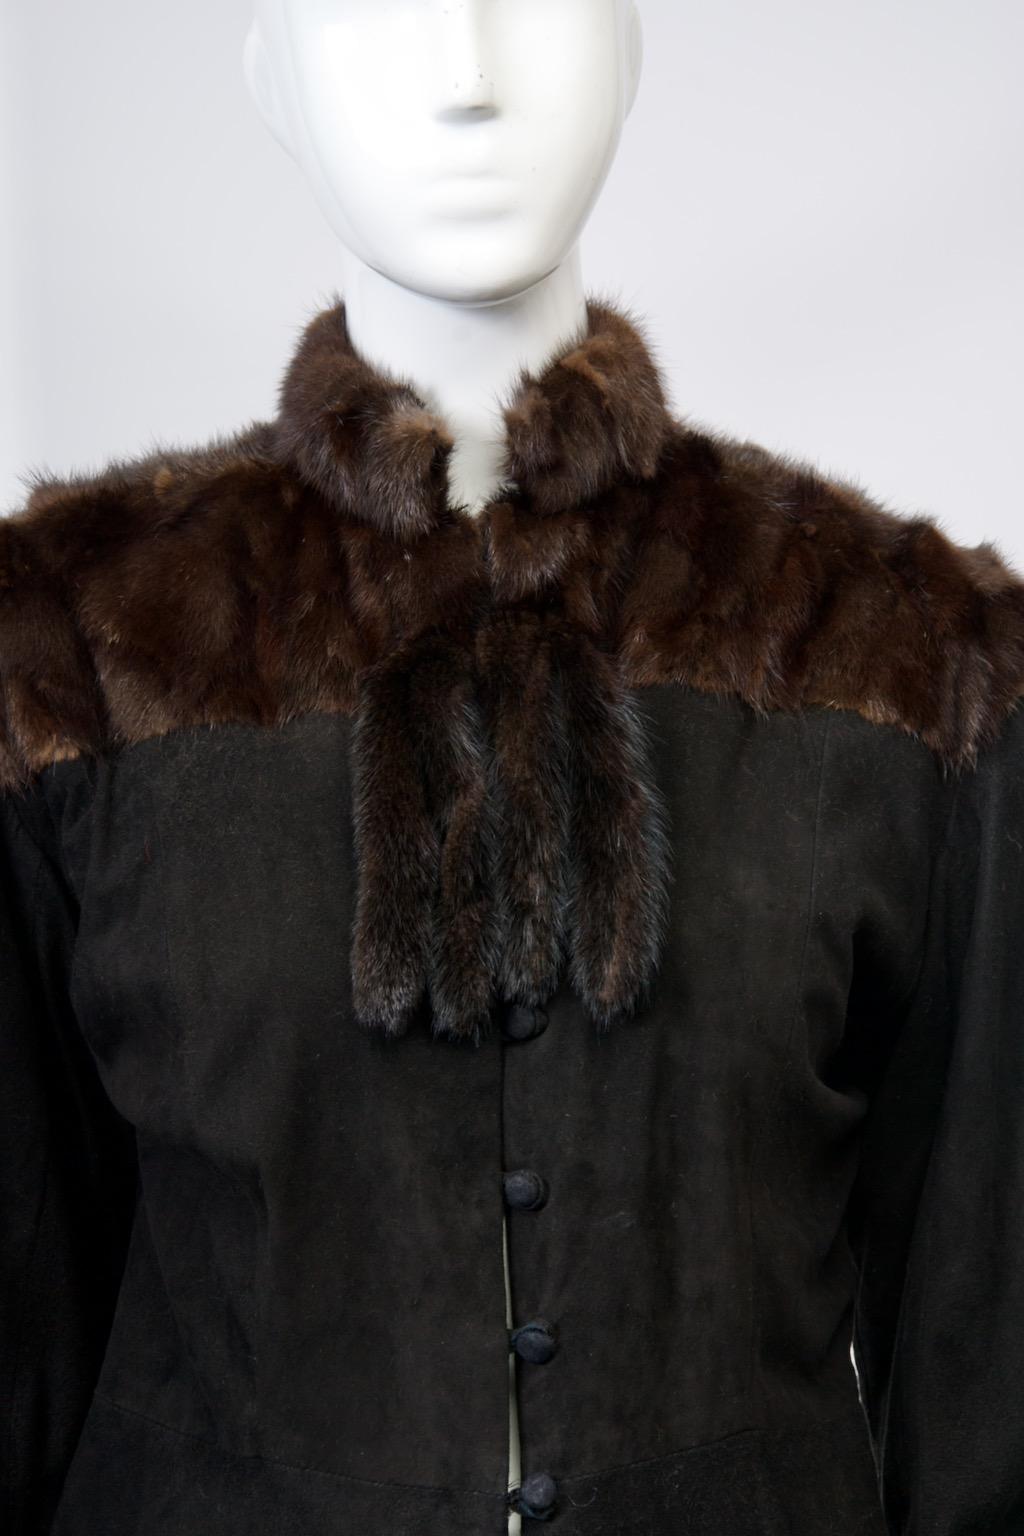 Diese neuartige Vintage-Jacke aus den 1980er Jahren ist aus geschmeidigem schwarzem Wildleder gefertigt und verfügt über eine Passe, einen Mandarinkragen und zwei Paar Schwänze am Hals aus dunkelbraunem Nerz. Die angesetzten Ärmel verjüngen sich bis